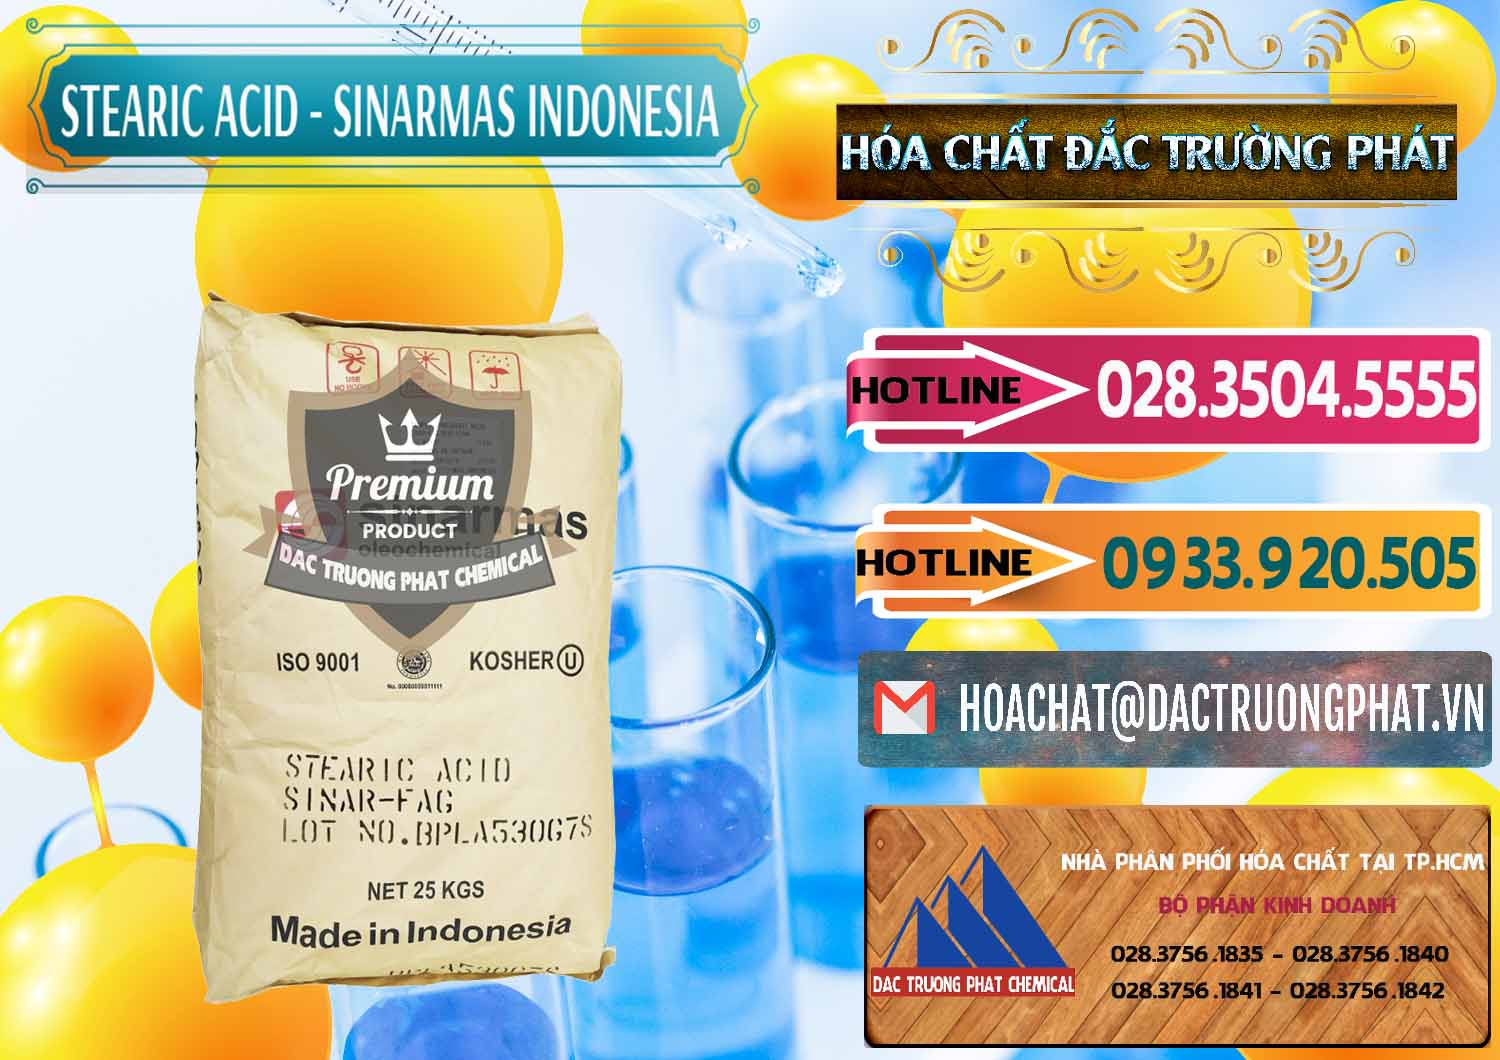 Nơi chuyên bán & cung ứng Axit Stearic - Stearic Acid Sinarmas Indonesia - 0389 - Cung cấp ( kinh doanh ) hóa chất tại TP.HCM - dactruongphat.vn